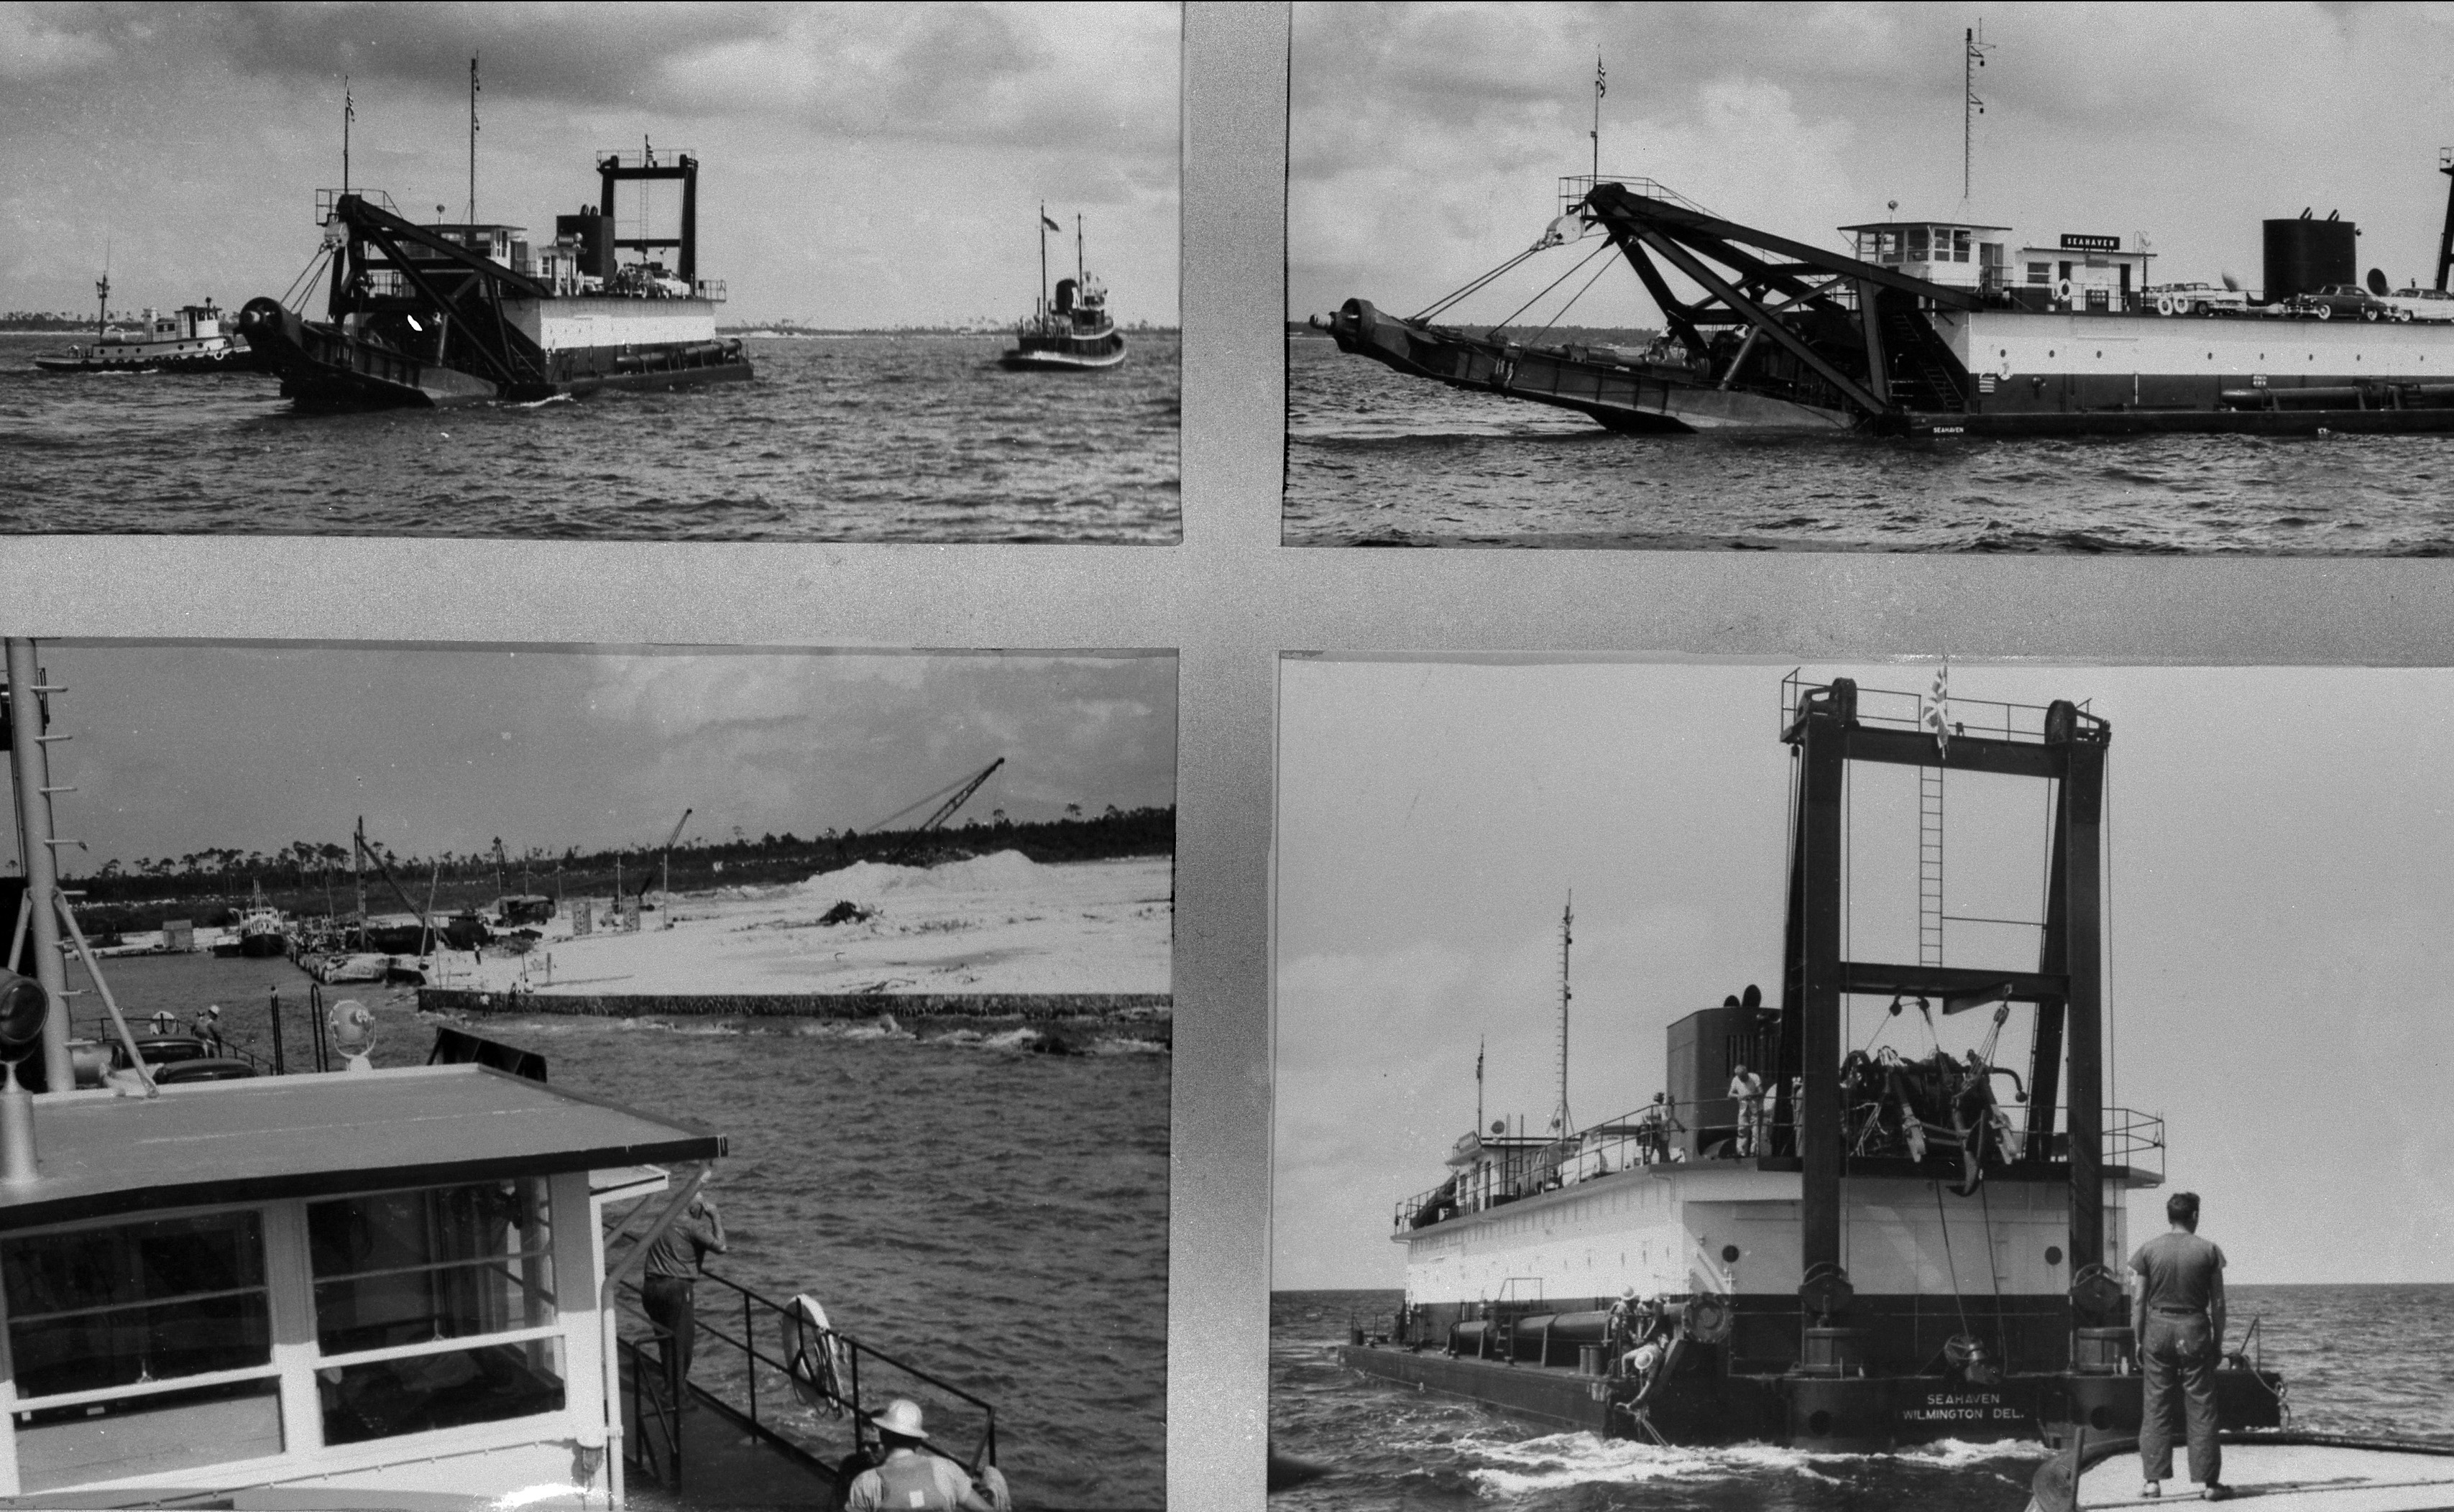 Arrival of dredge, Seahaven, September 1956